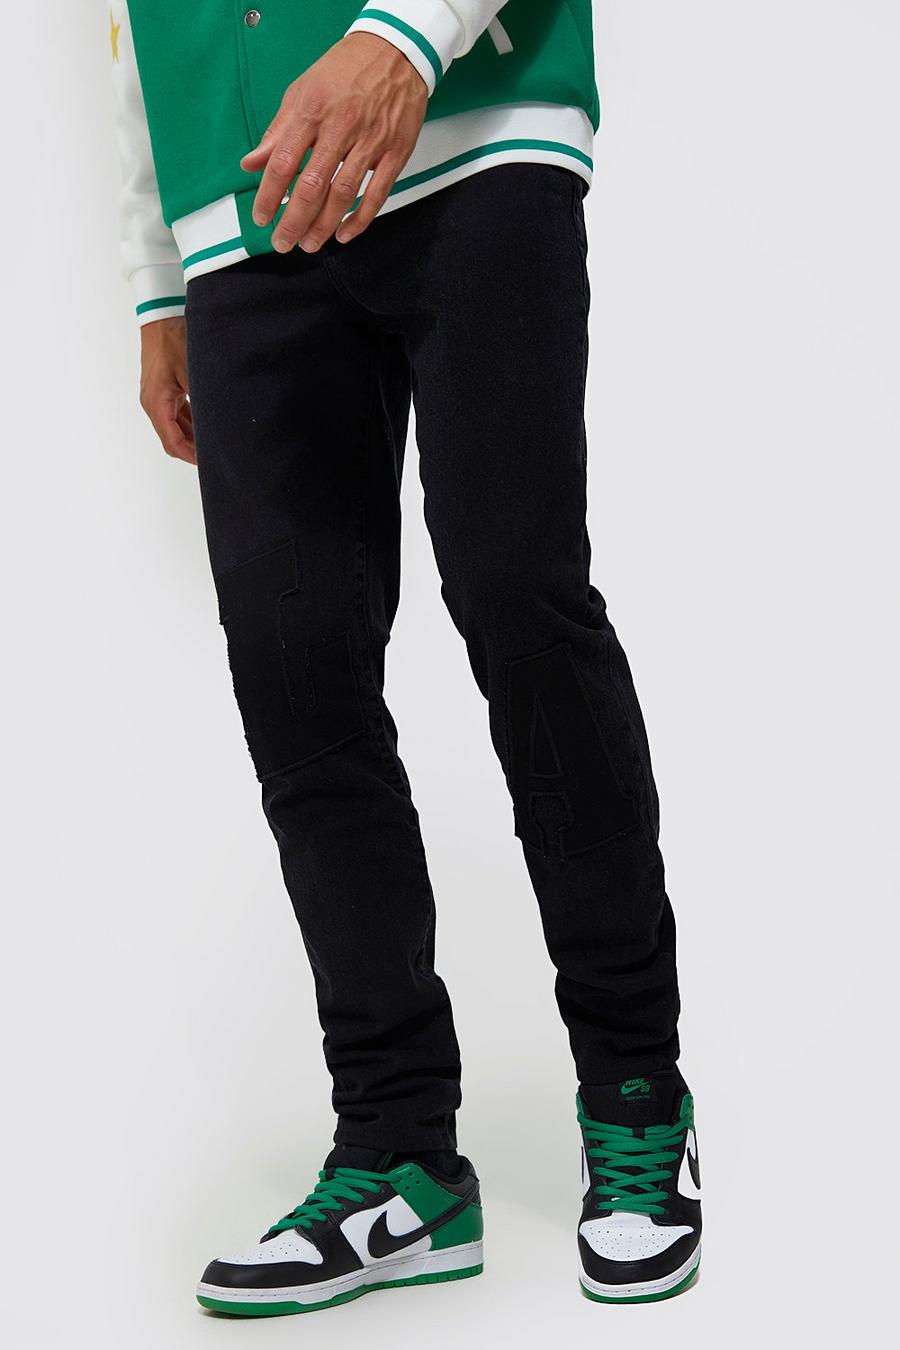 Jeans Tall Slim Fit rigidi con applique LA stile Varsity, Washed black